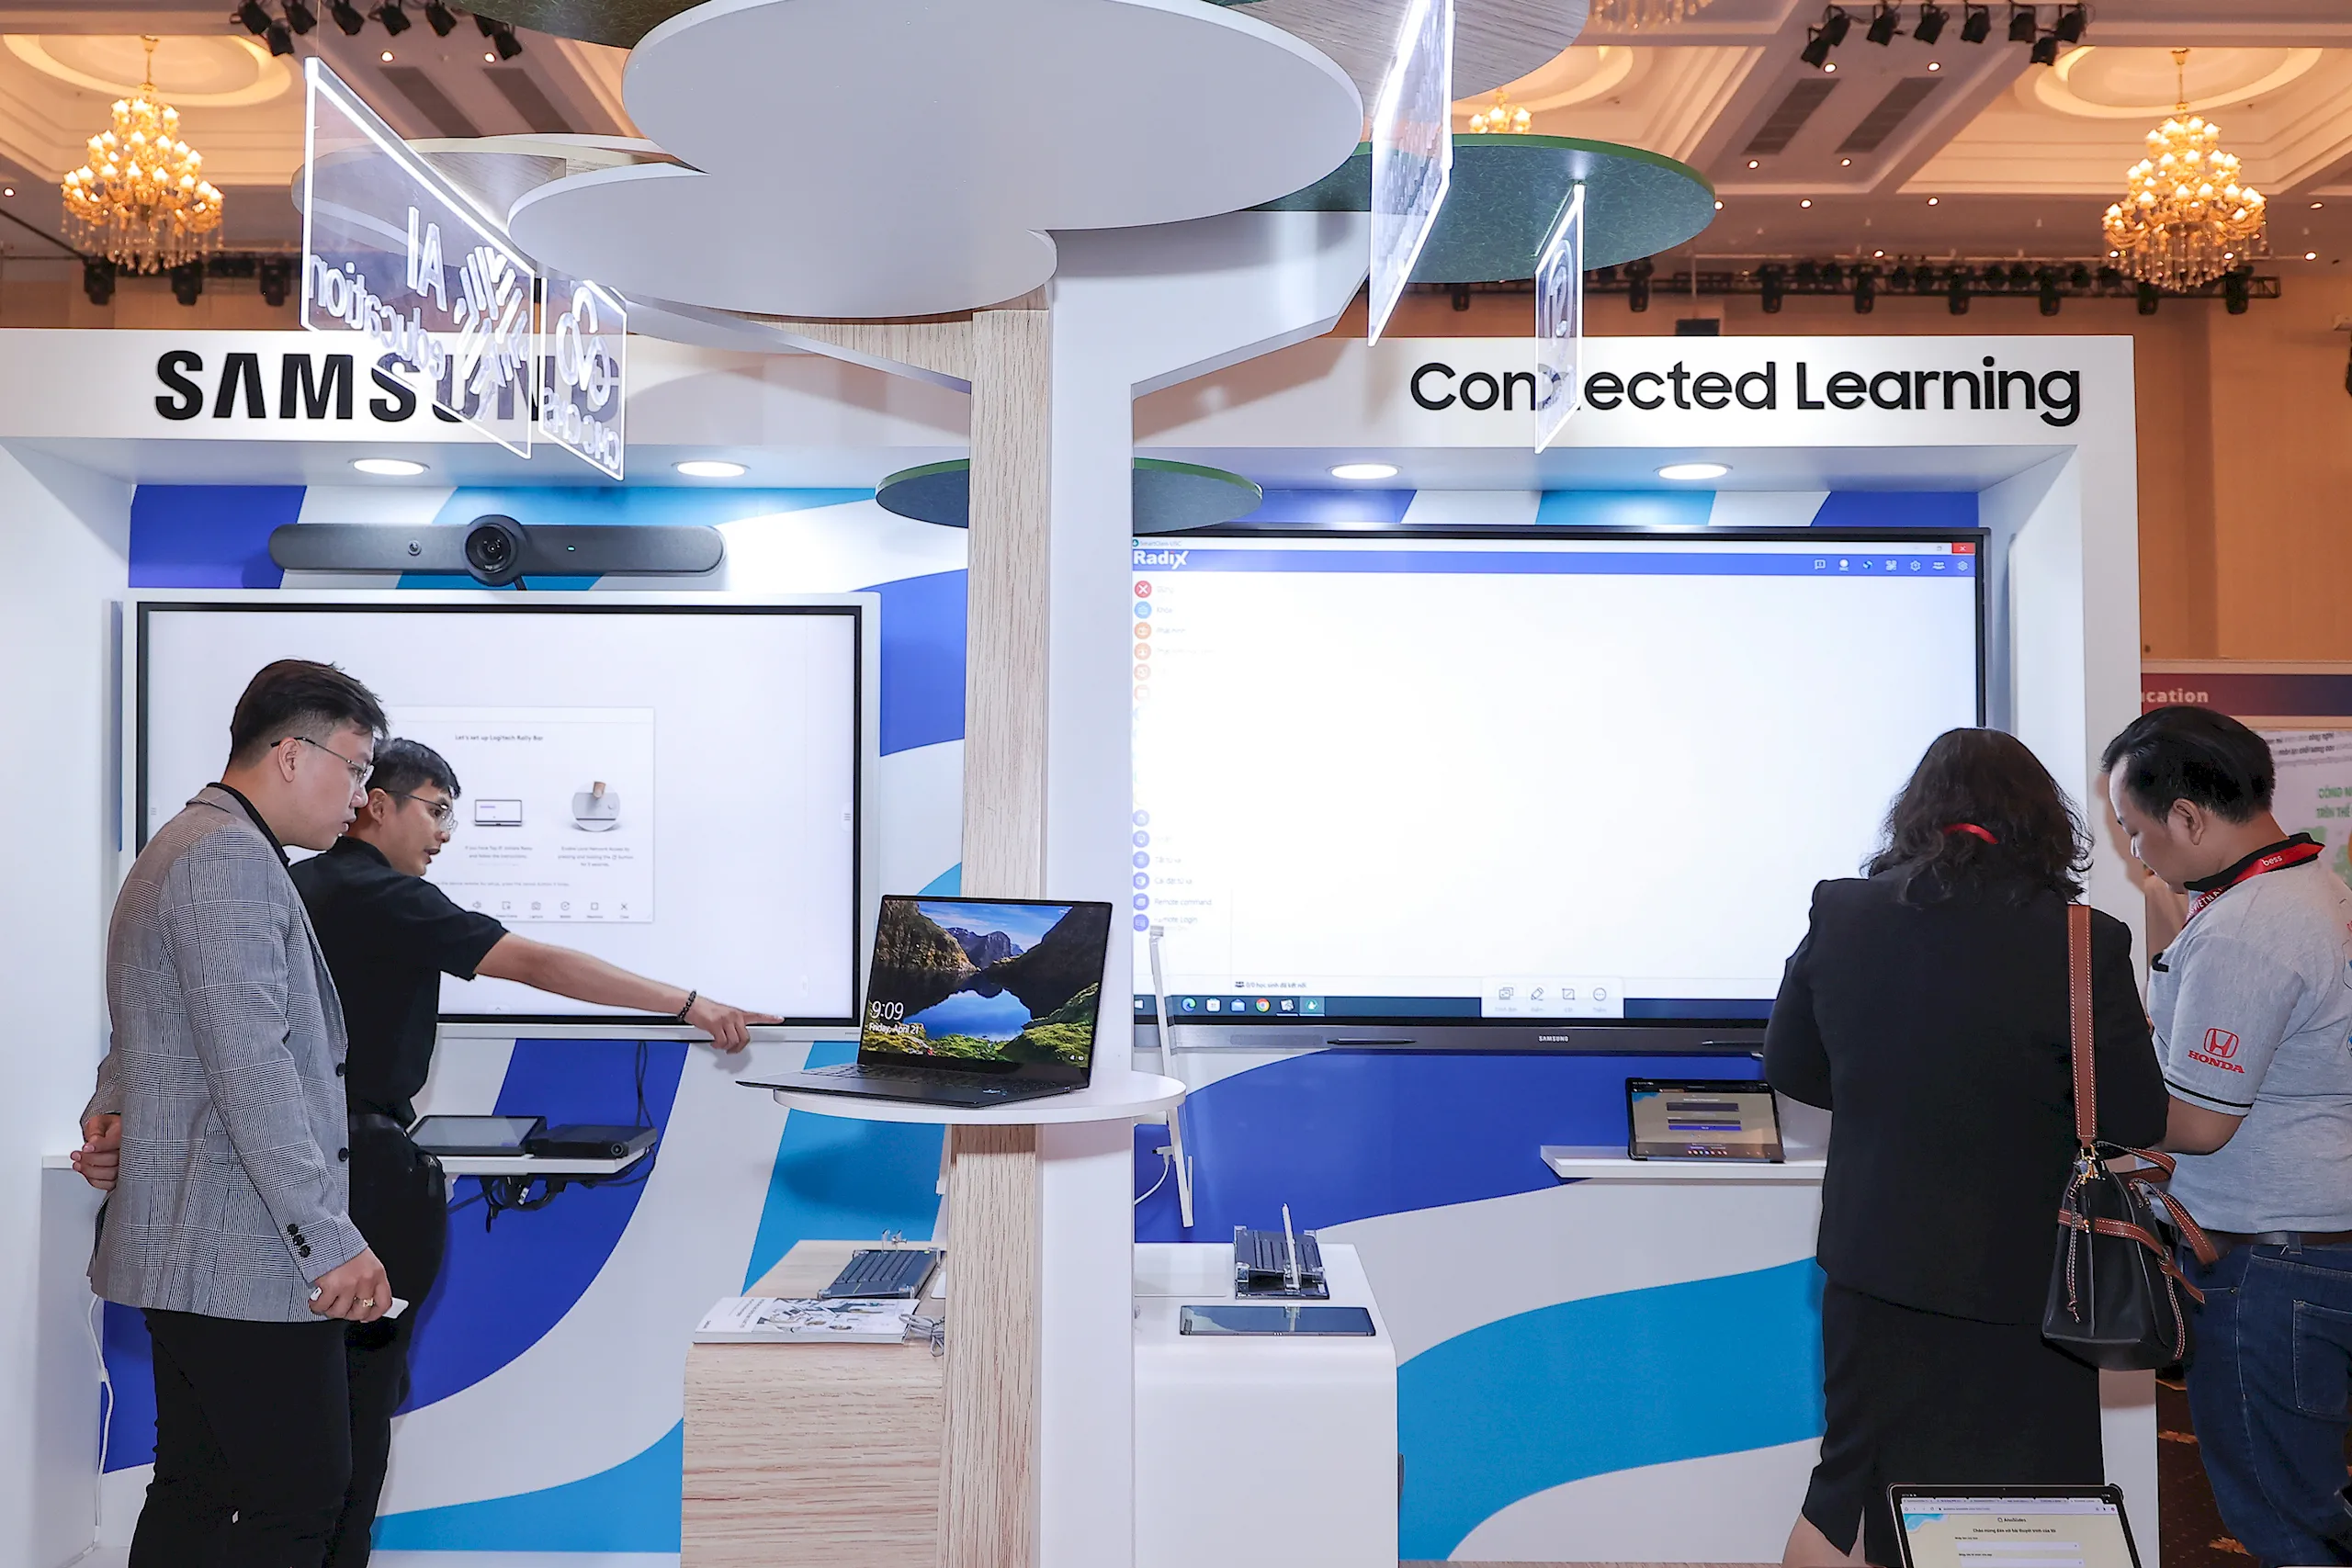 Samsung giới thiệu màn hình tương tác và thiết bị hỗ trợ giáo dục tại triển lãm quốc tế BESS Việt Nam 2023